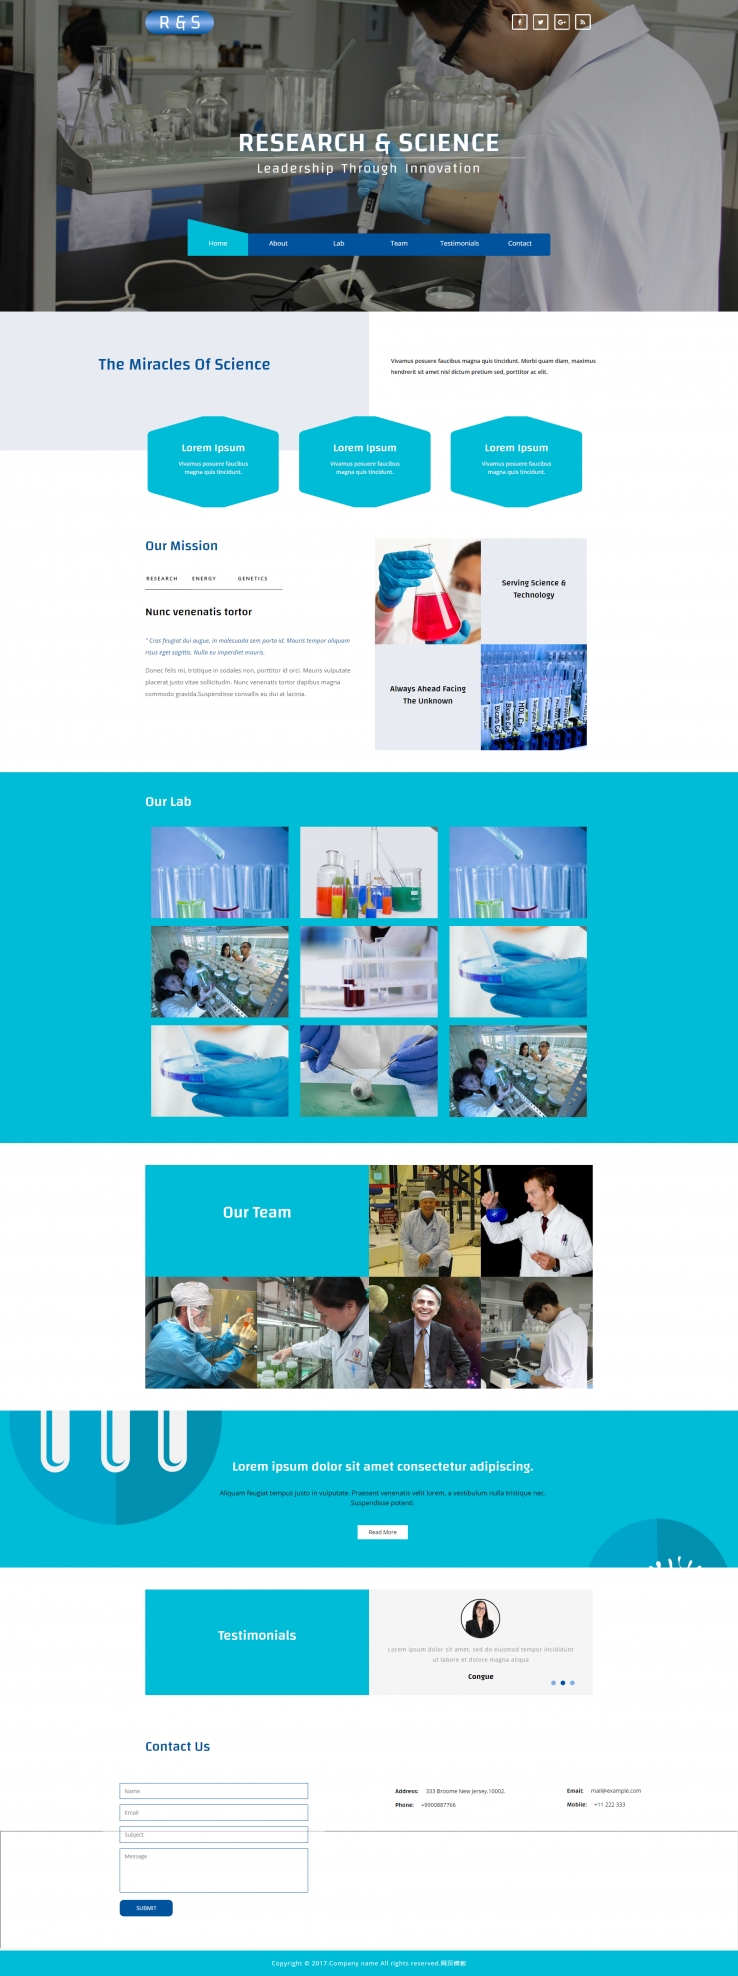 蓝色简洁风格的化学研究实验室模板下载